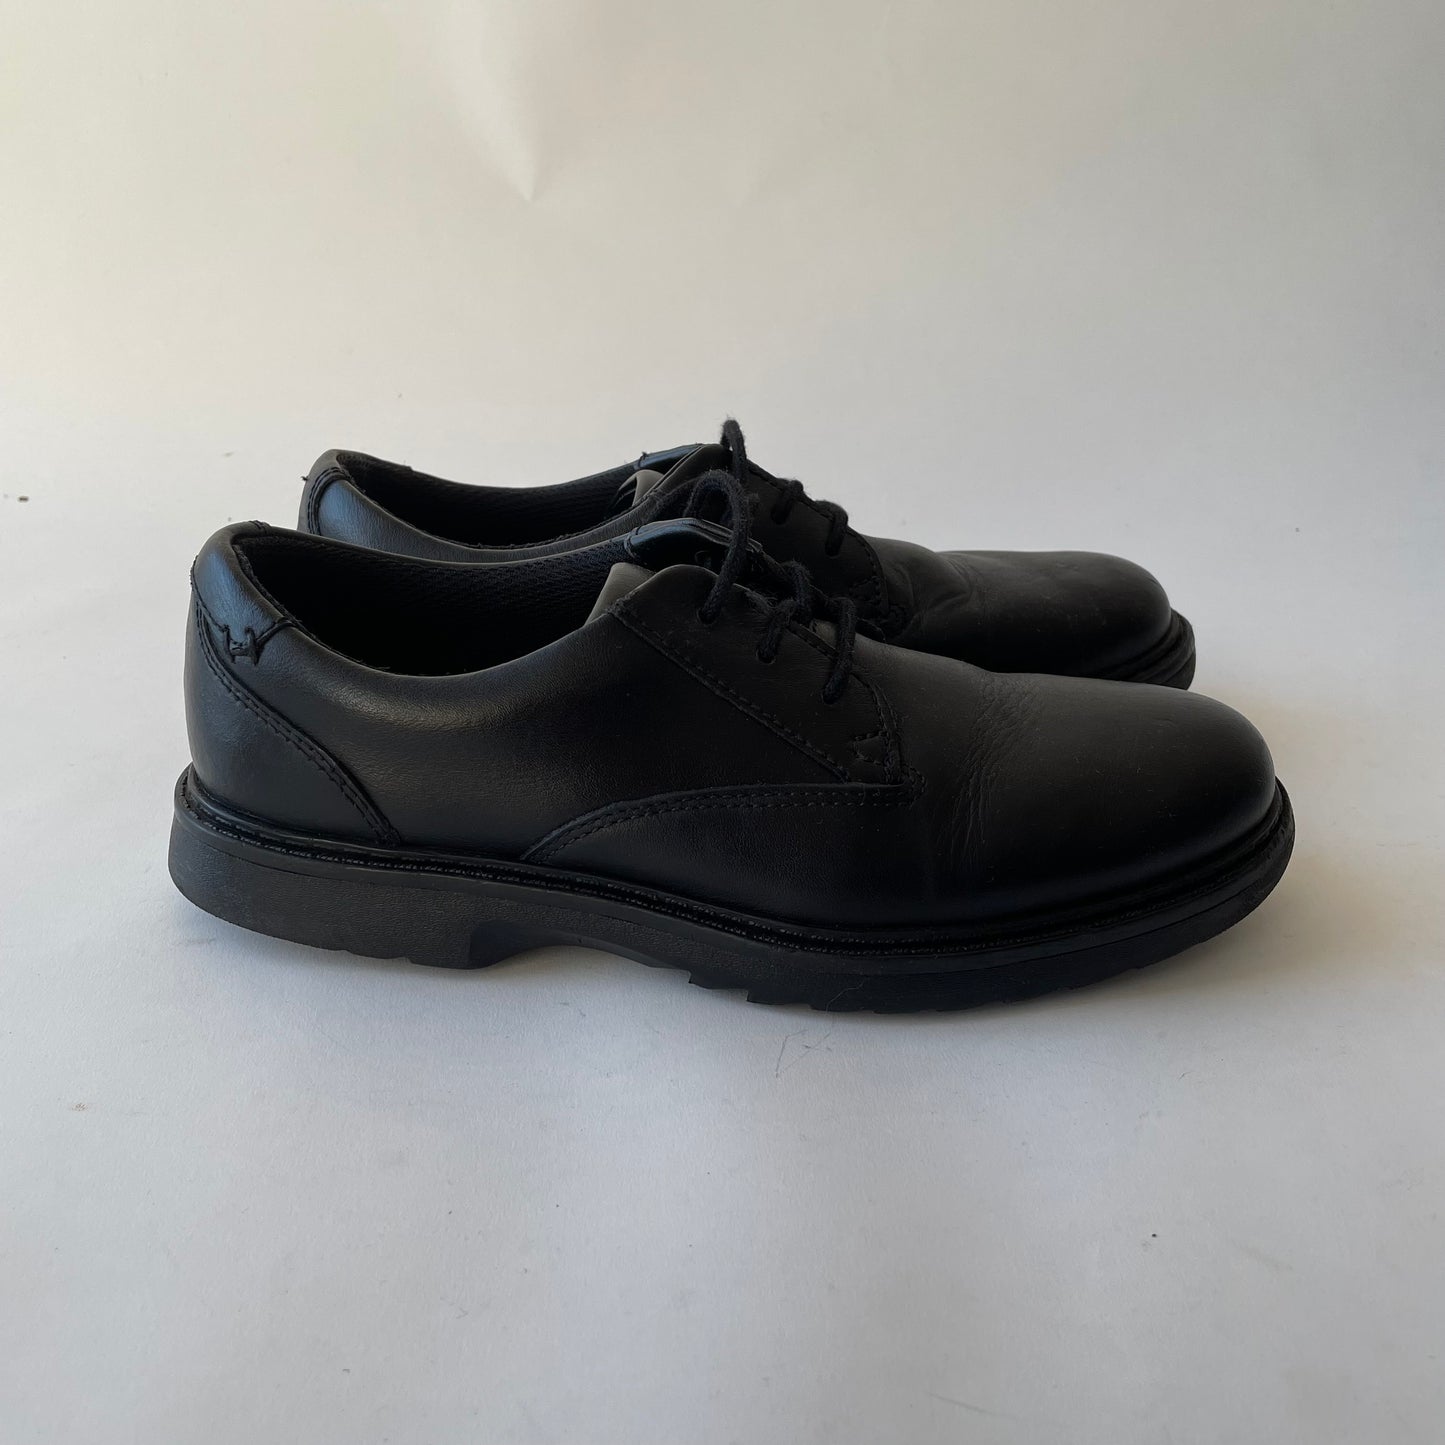 Clarks Black Shoes Shoe Size 3F